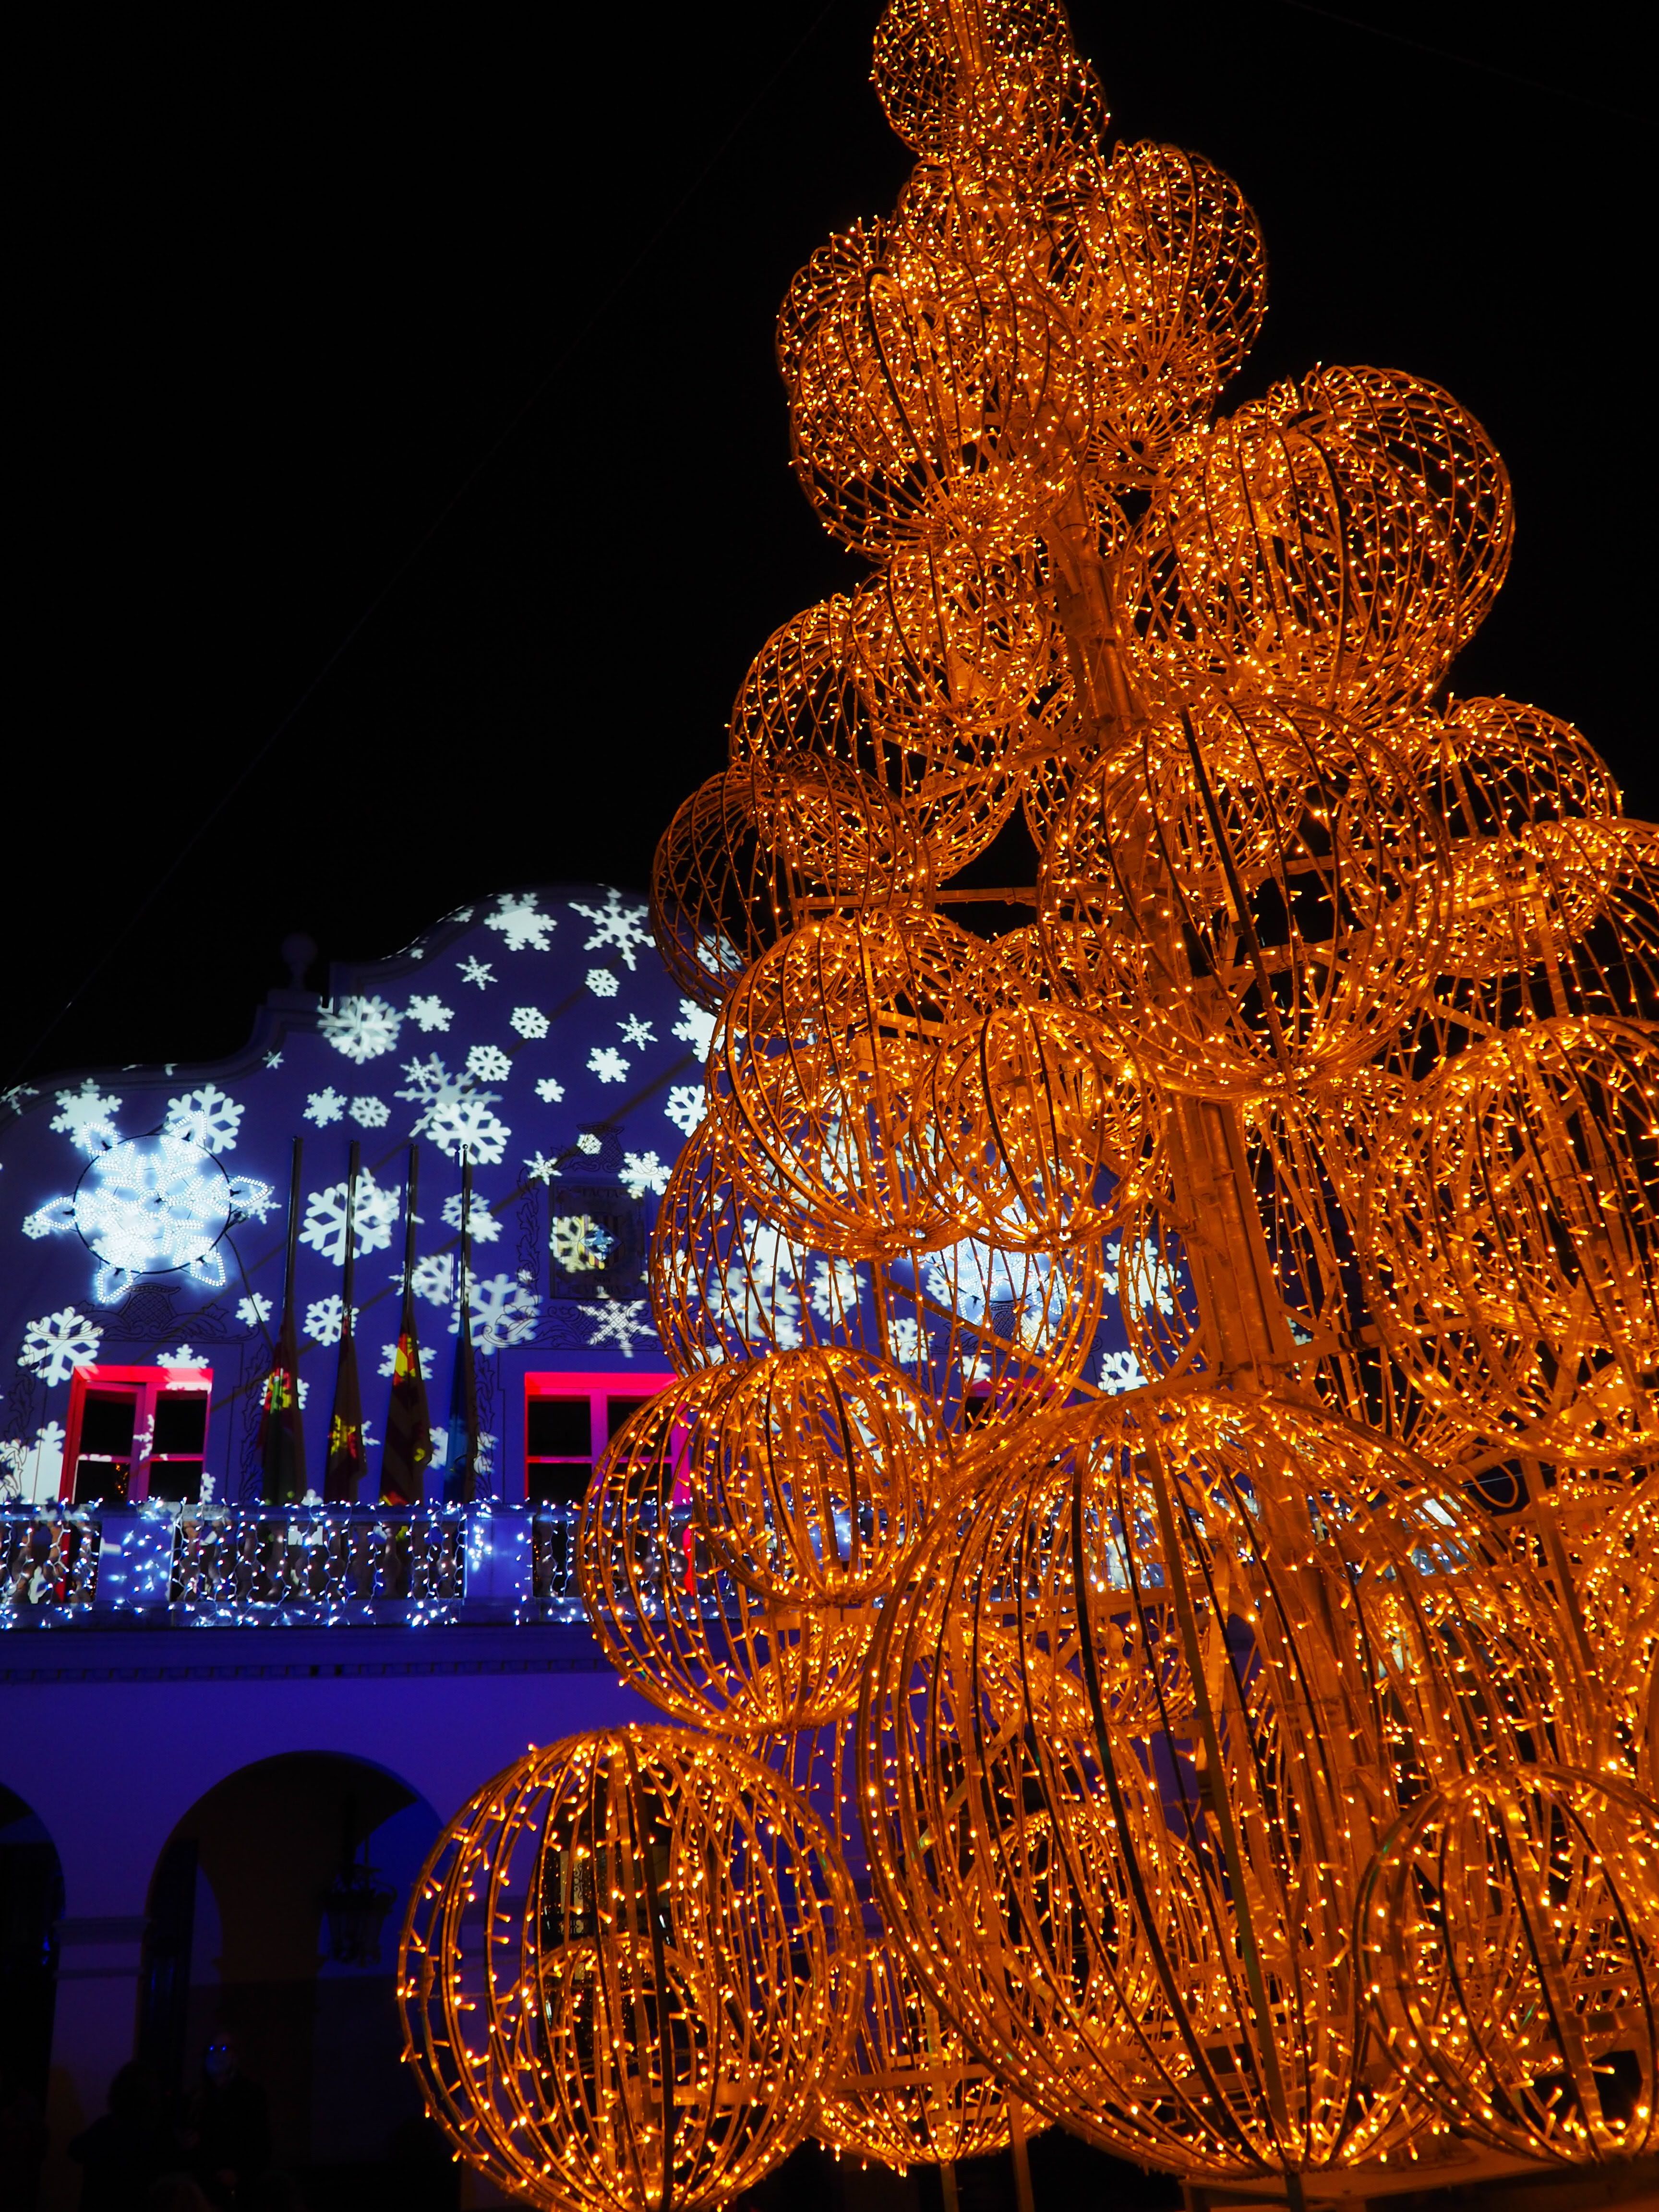 Encesa dels llums de Nadal a Cerdanyola. FOTO: Mónica GM